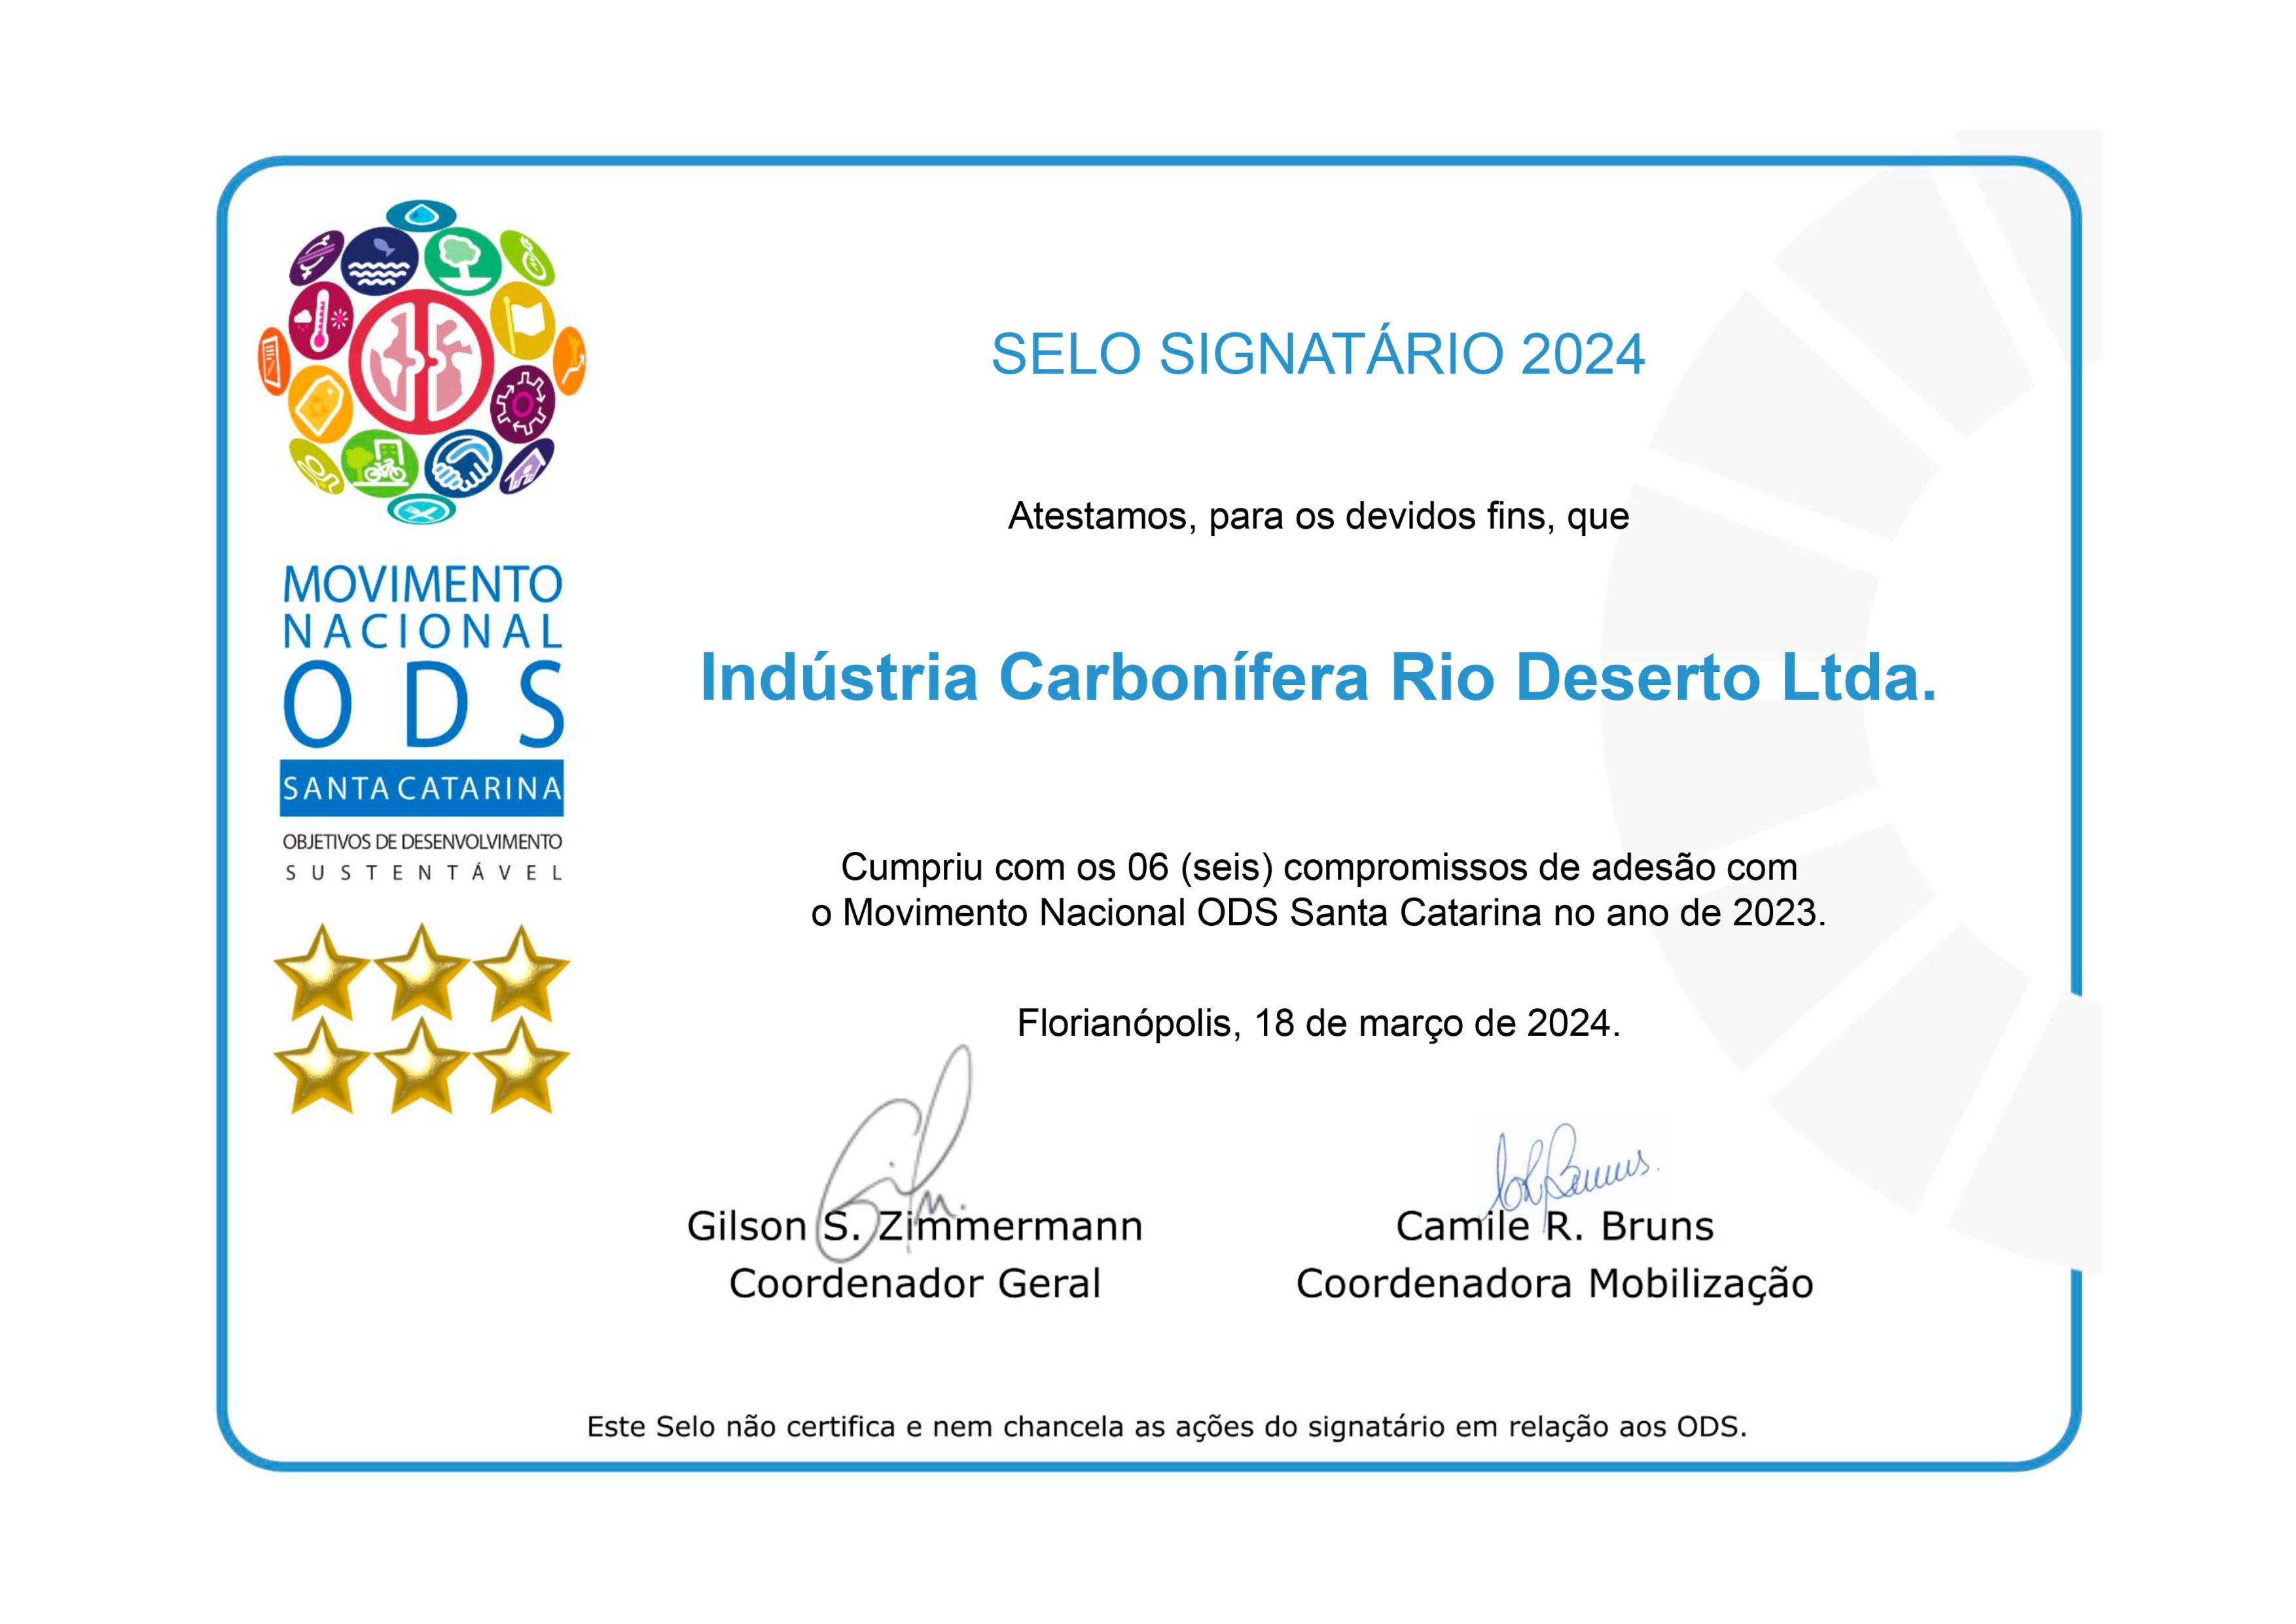 Rio Deserto e Ragro recebem Selo Signatário ODS 2024